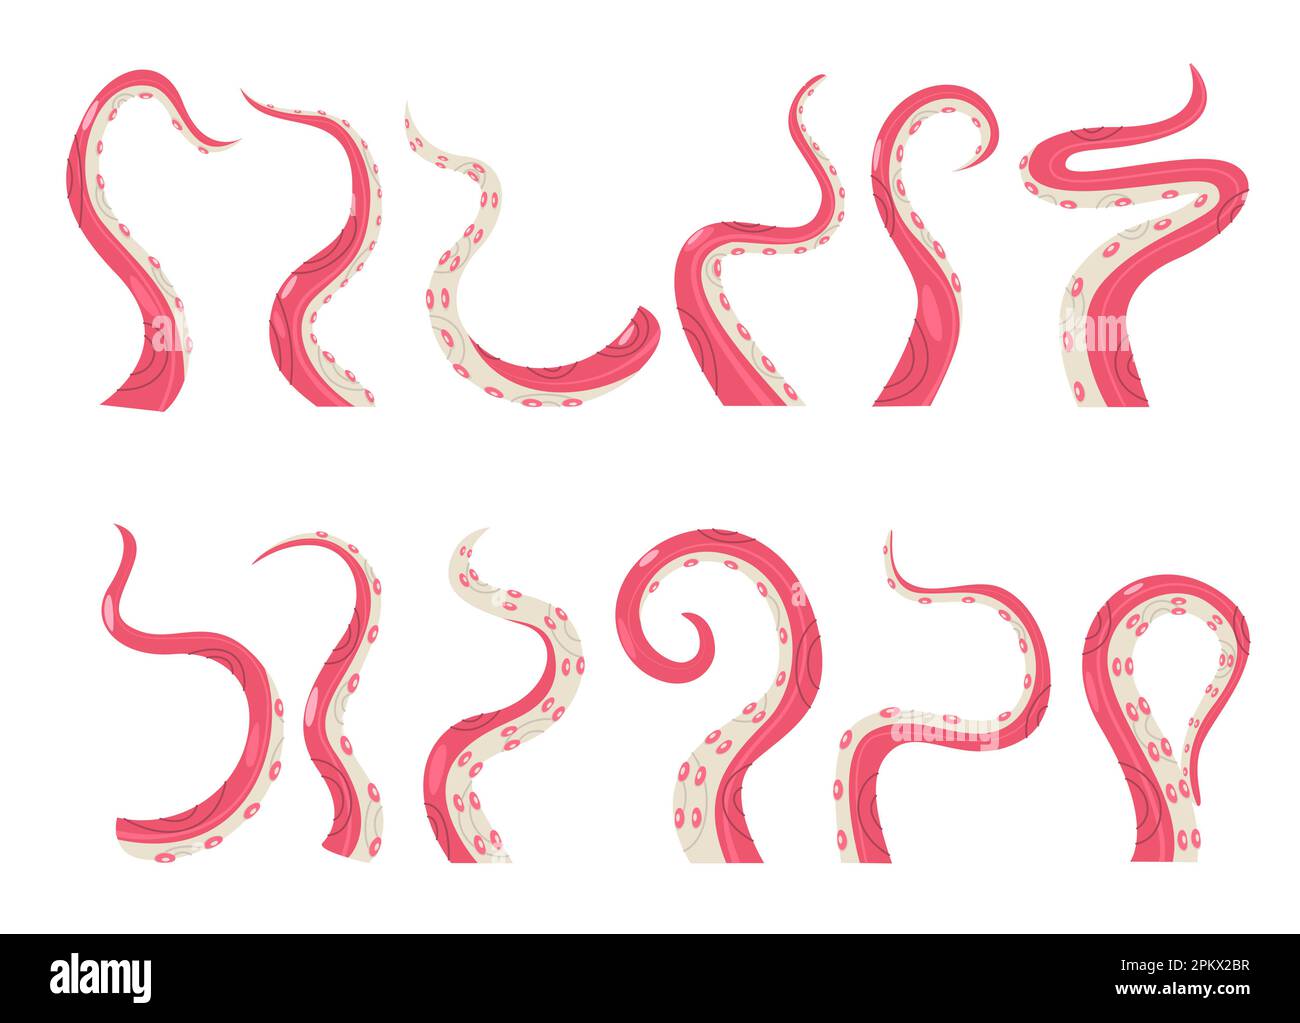 Collezione di tentacoli di polipo. Simpatici cefalopodi in pose diverse, illustrazioni colorate e giocose. Set grafico vettoriale creatura marina di octo Illustrazione Vettoriale